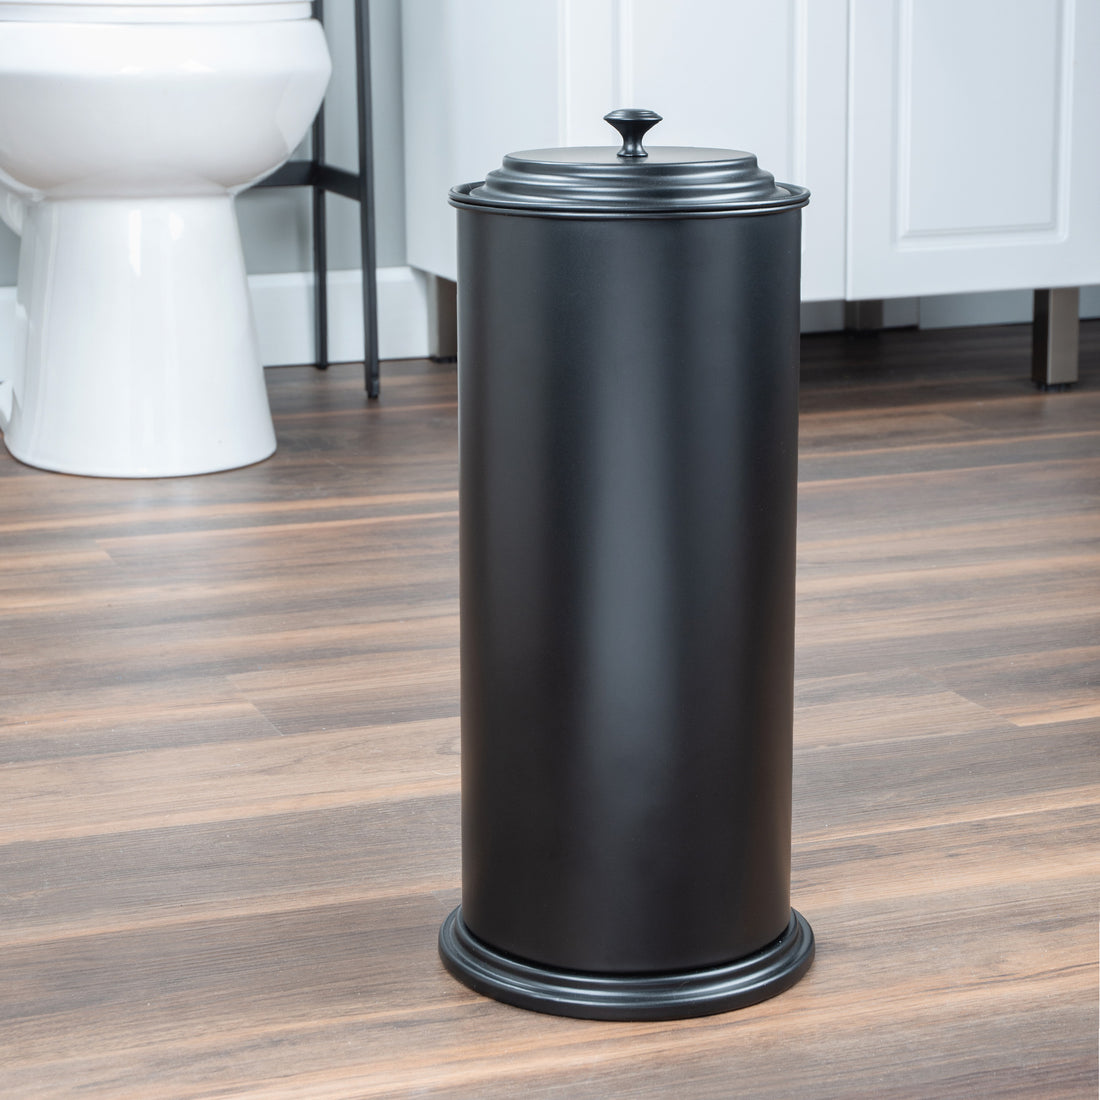 Freestanding Extra Large Toilet Paper Holder (Matte Black Finish) - Utility sinks vanites Tehila